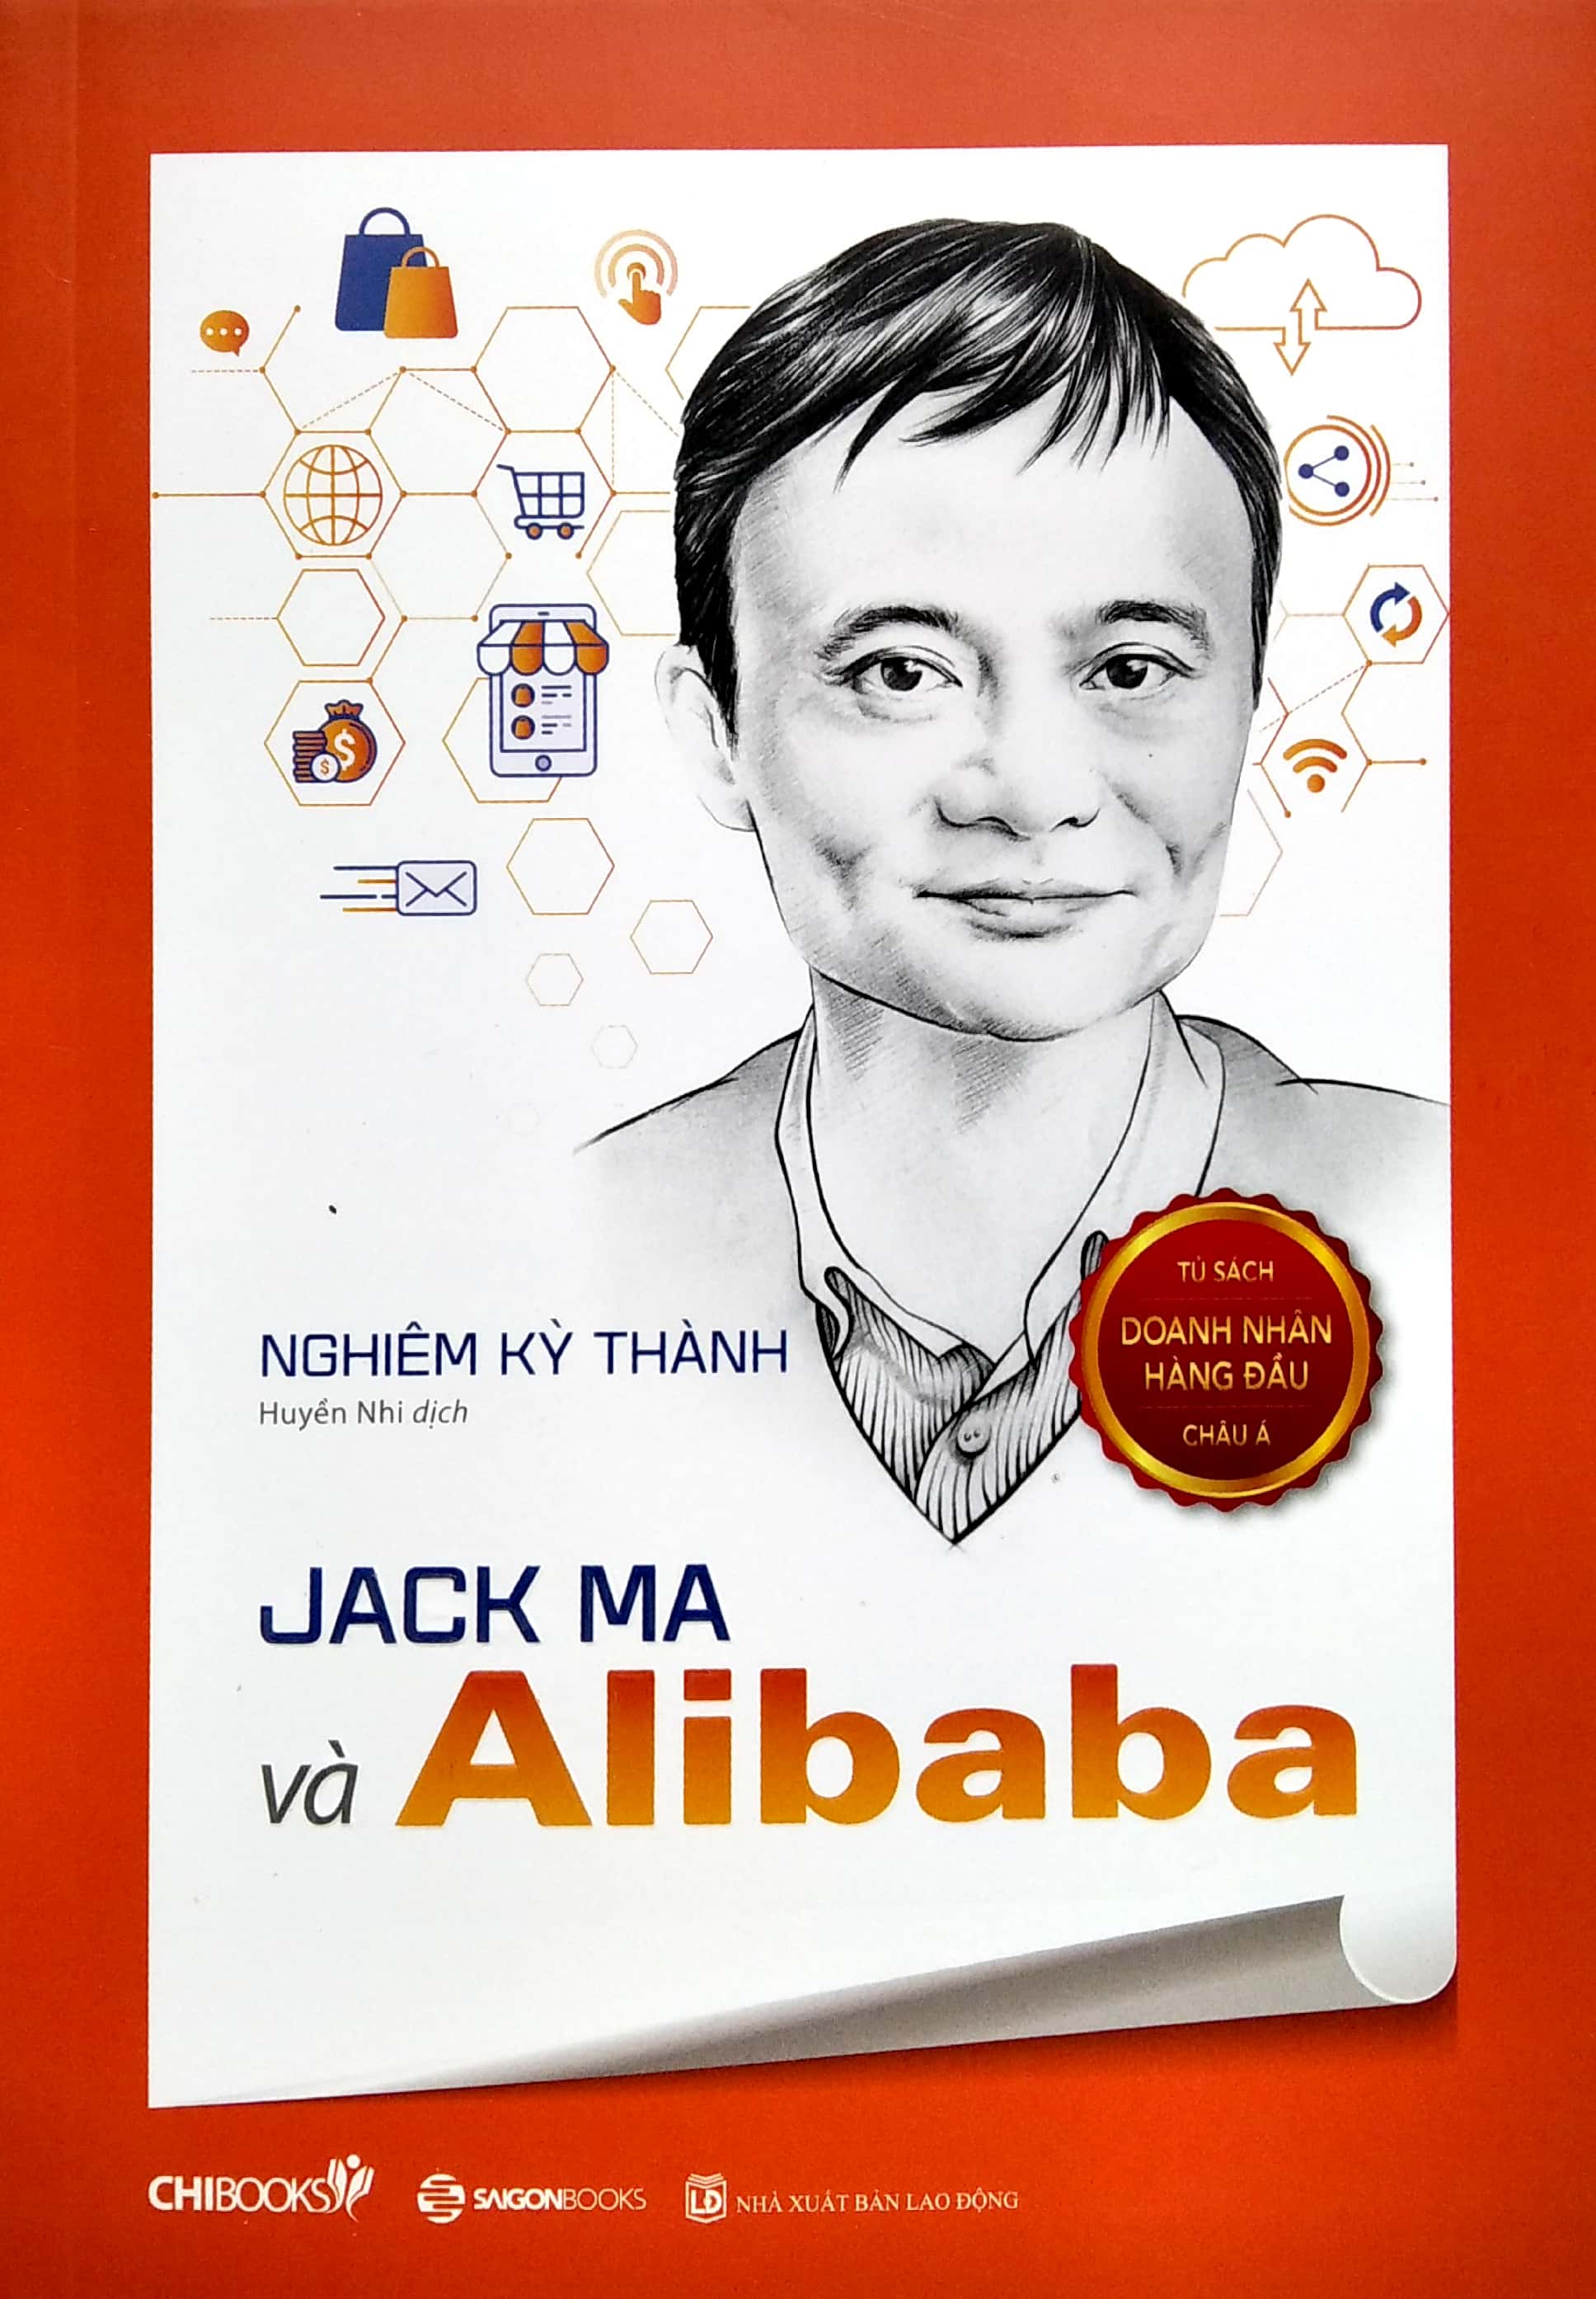 Jack Ma Và Alibaba Seri Tủ Sách Doanh Nhân Hàng Đầu Châu Á PDF